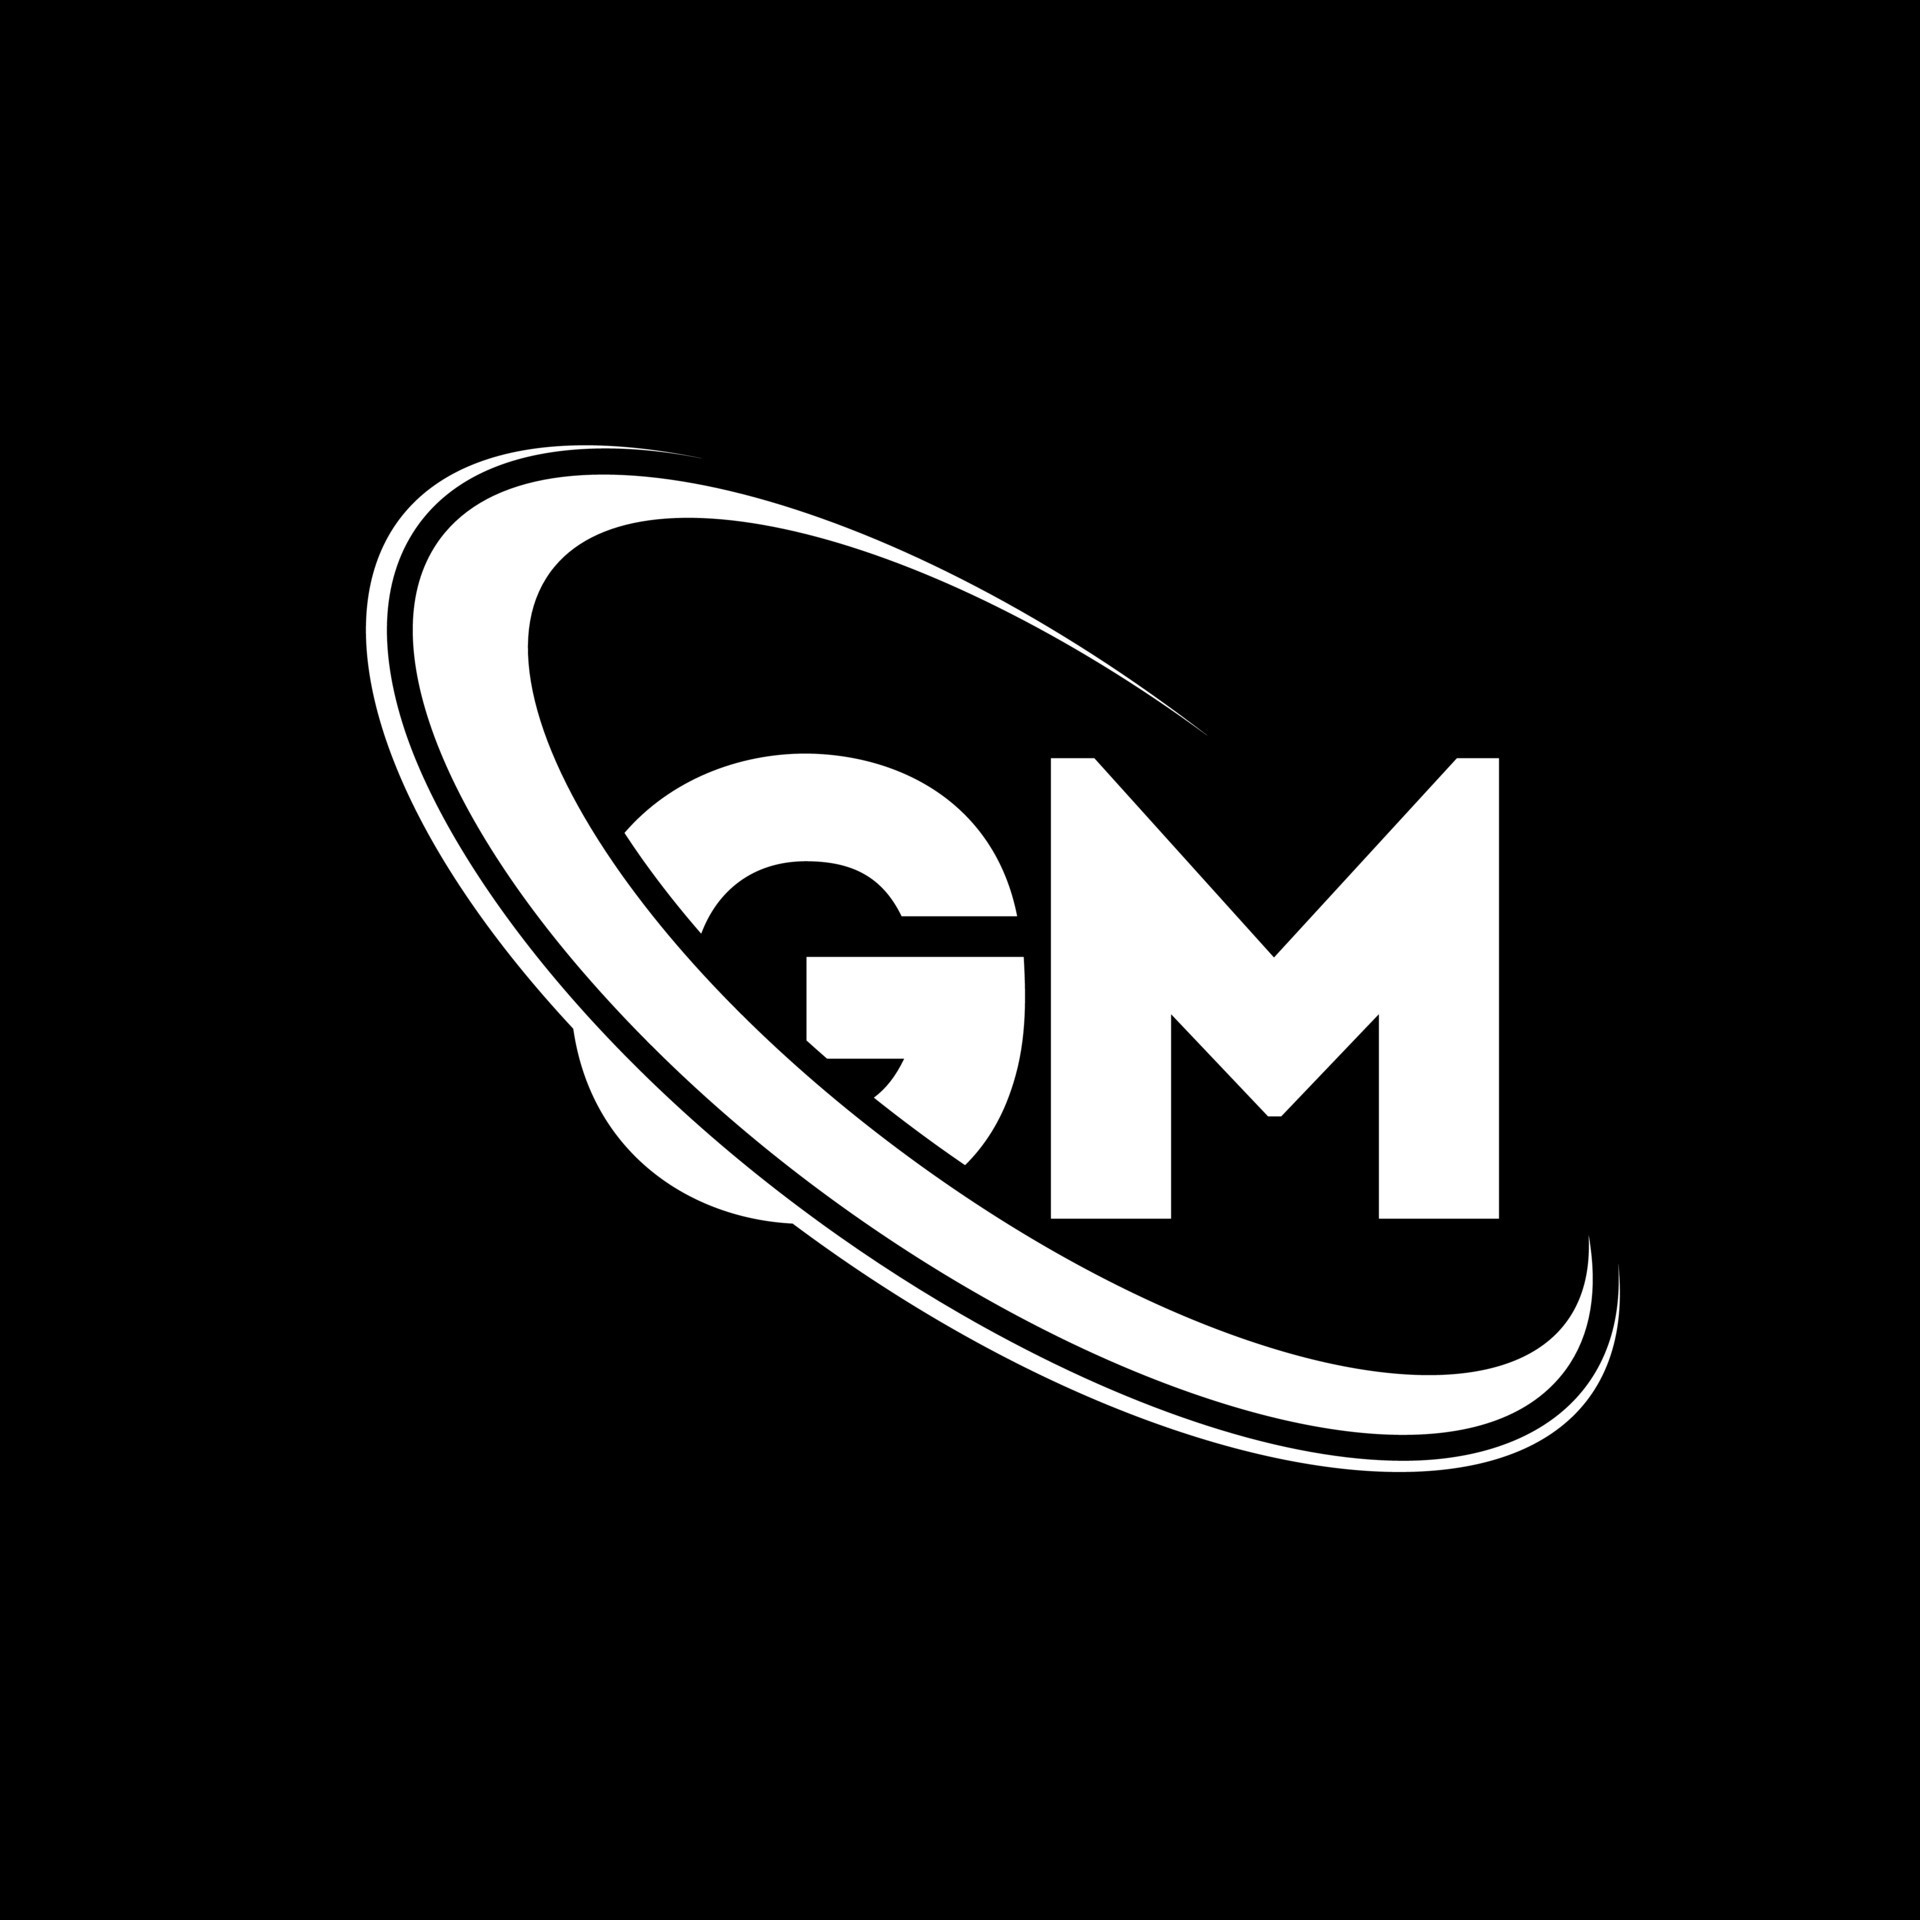 GM logo. G M design. White GM letter. GM letter logo design. Initial letter  GM linked circle uppercase monogram logo. 10761500 Vector Art at Vecteezy